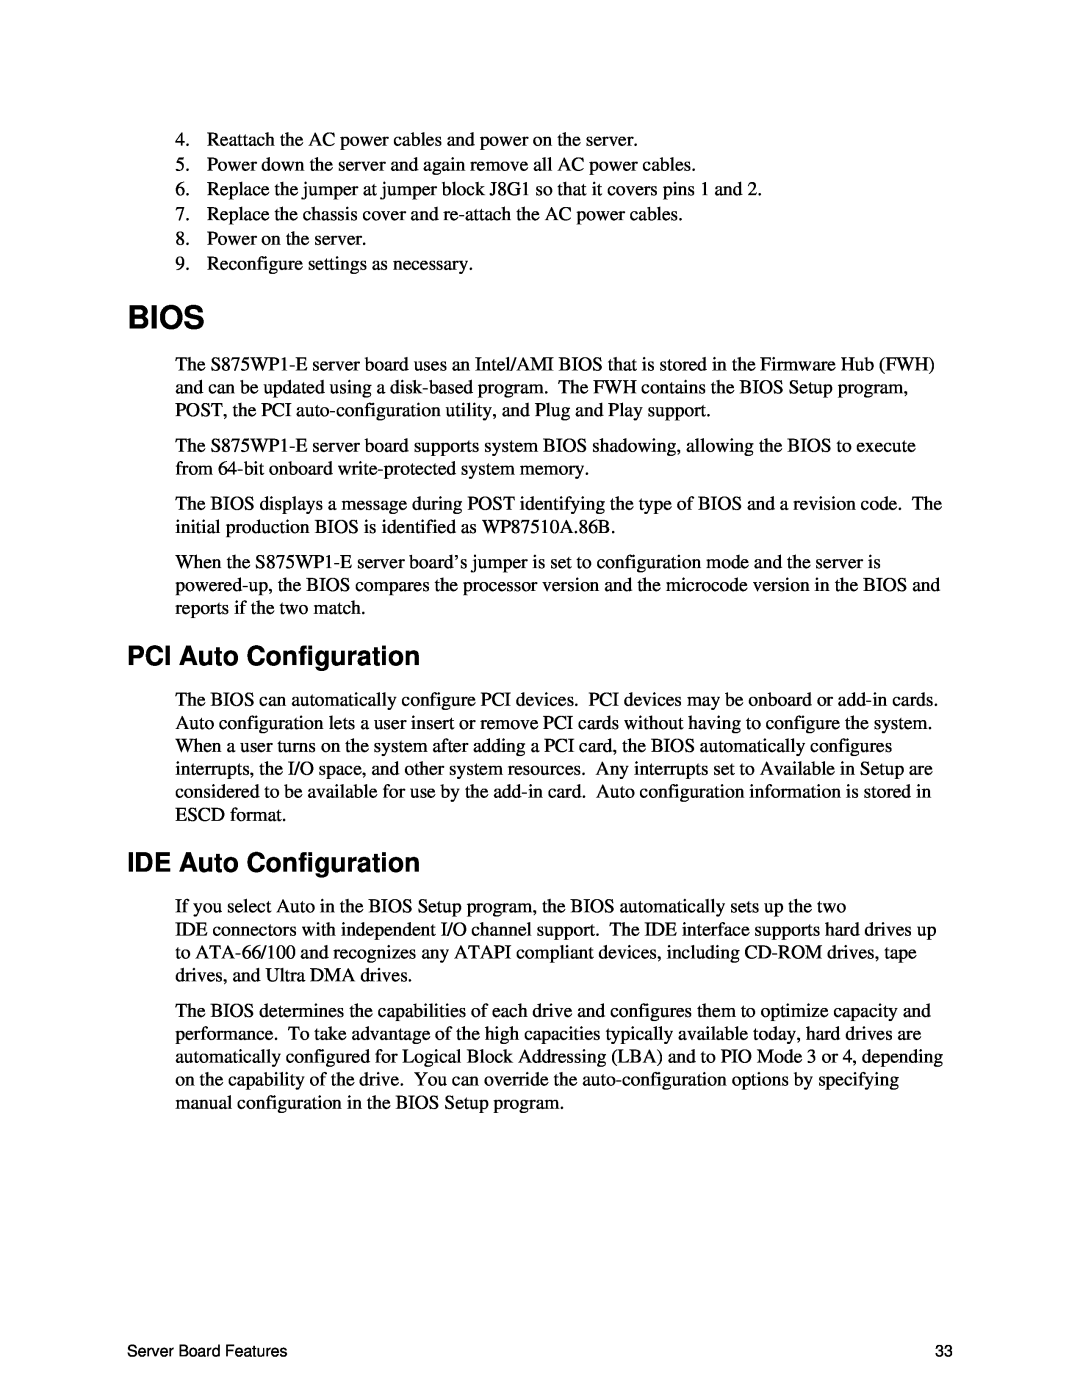 Intel S875WP1-E manual Bios, PCI Auto Configuration, IDE Auto Configuration 